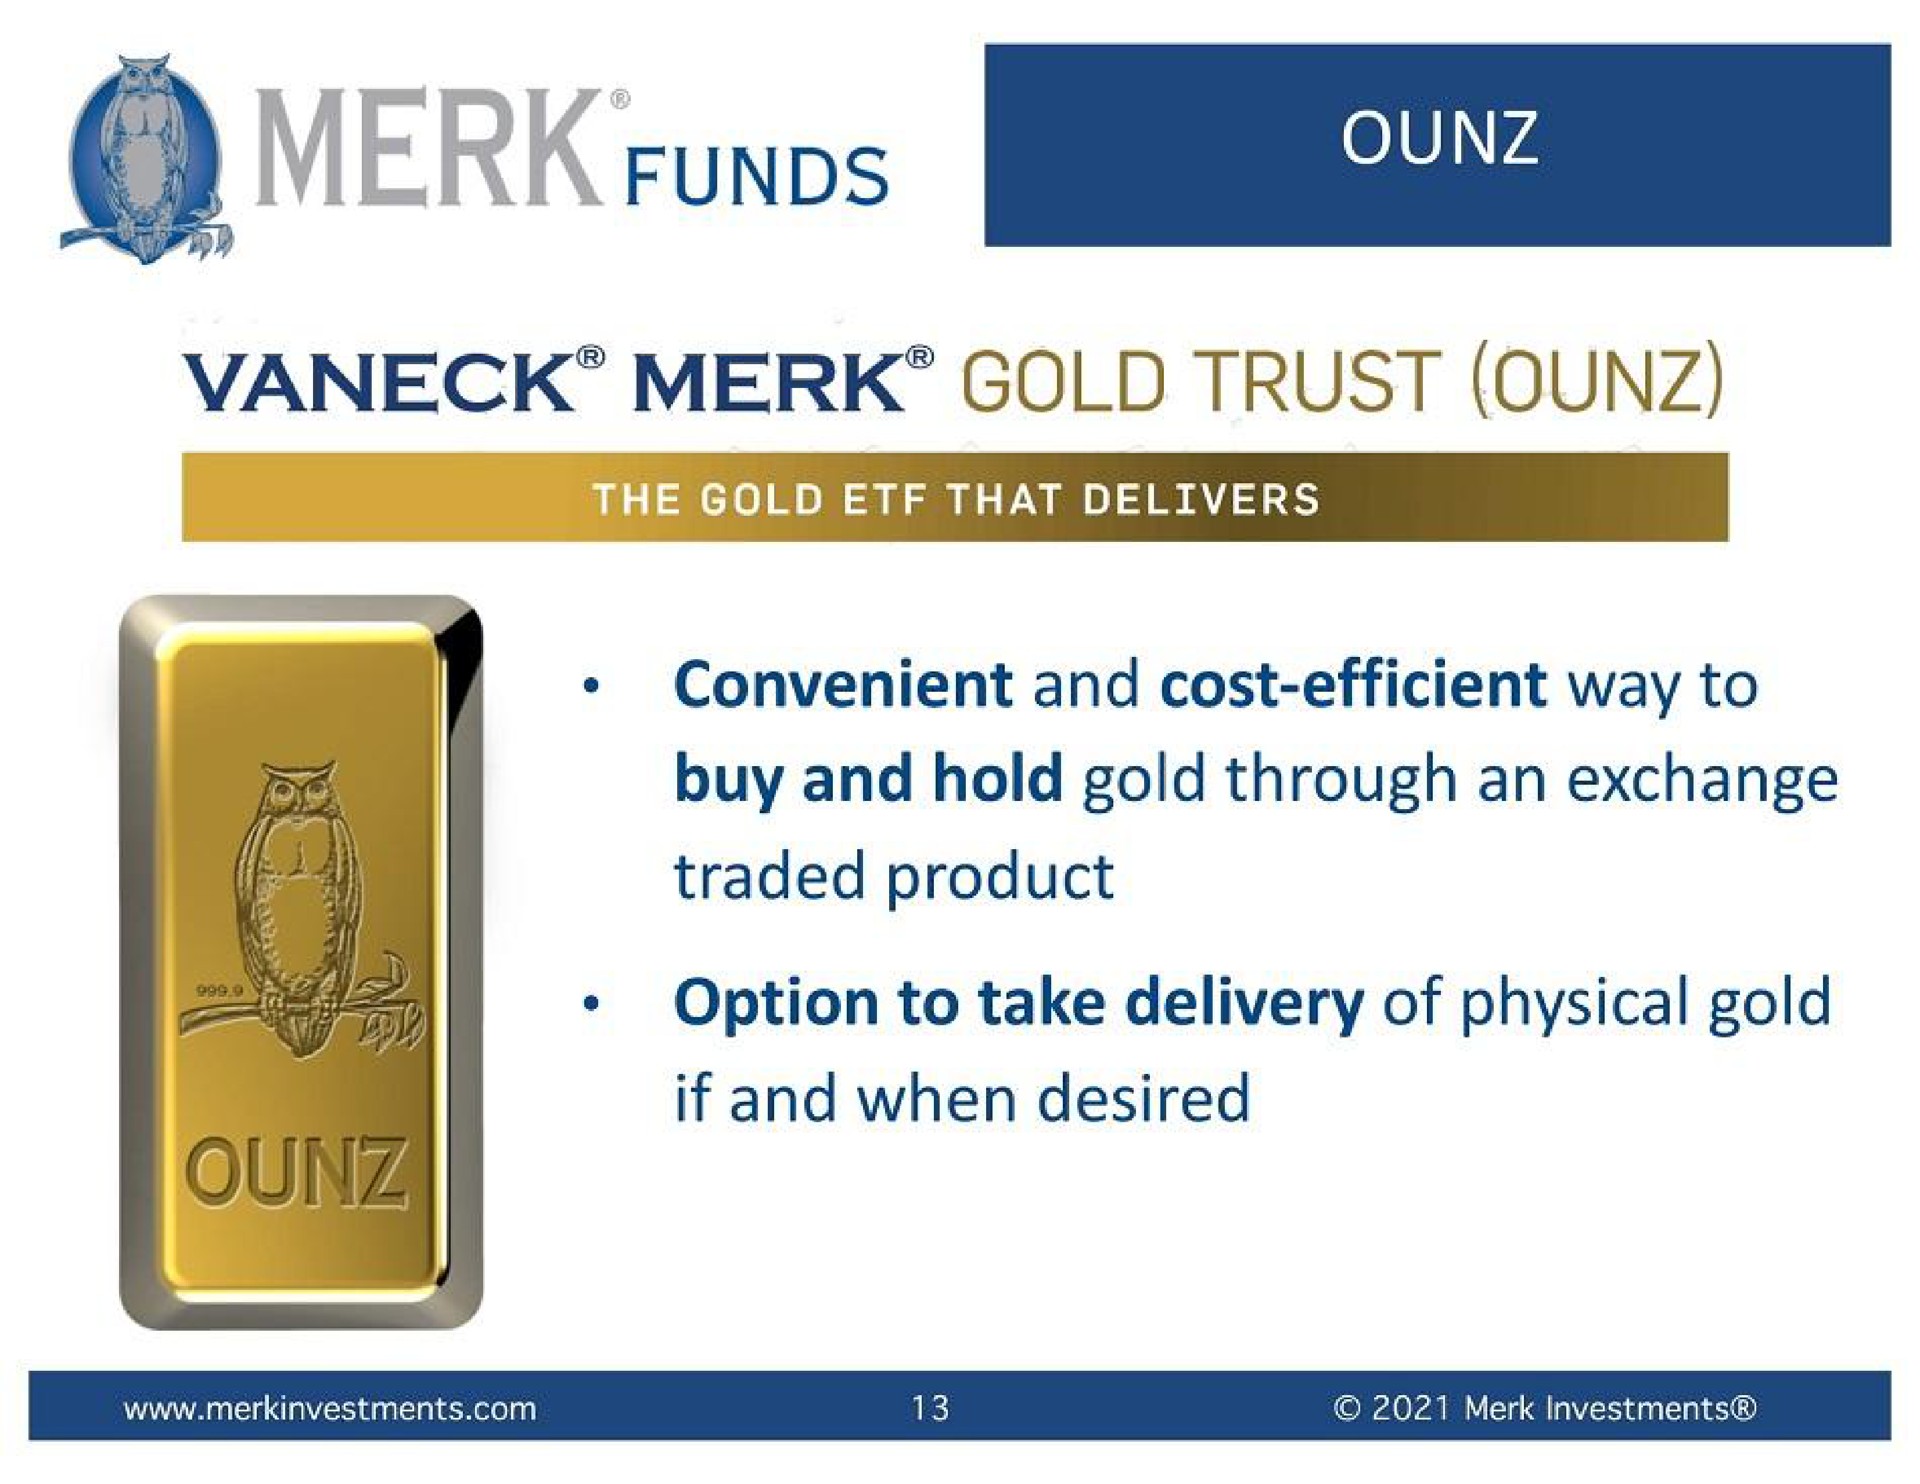 merk gold trust | VanEck Merk Gold Trust